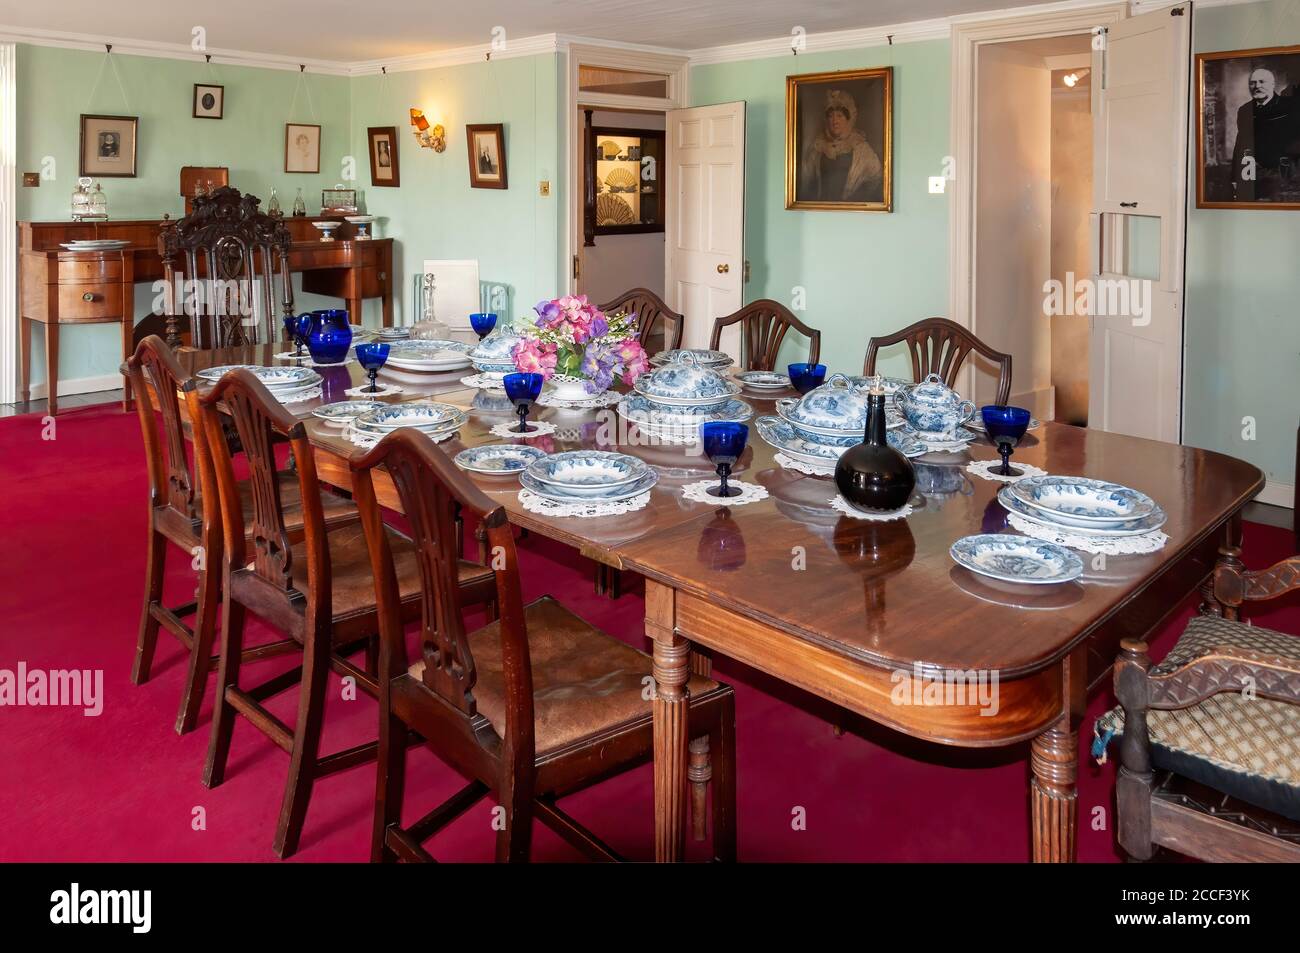 Schottland, Vereinigtes Königreich - 21. Mai 2012: Ein Speisesaal im Skaill House auf dem Festland Orkney, Schottland, Vereinigtes Königreich Stockfoto